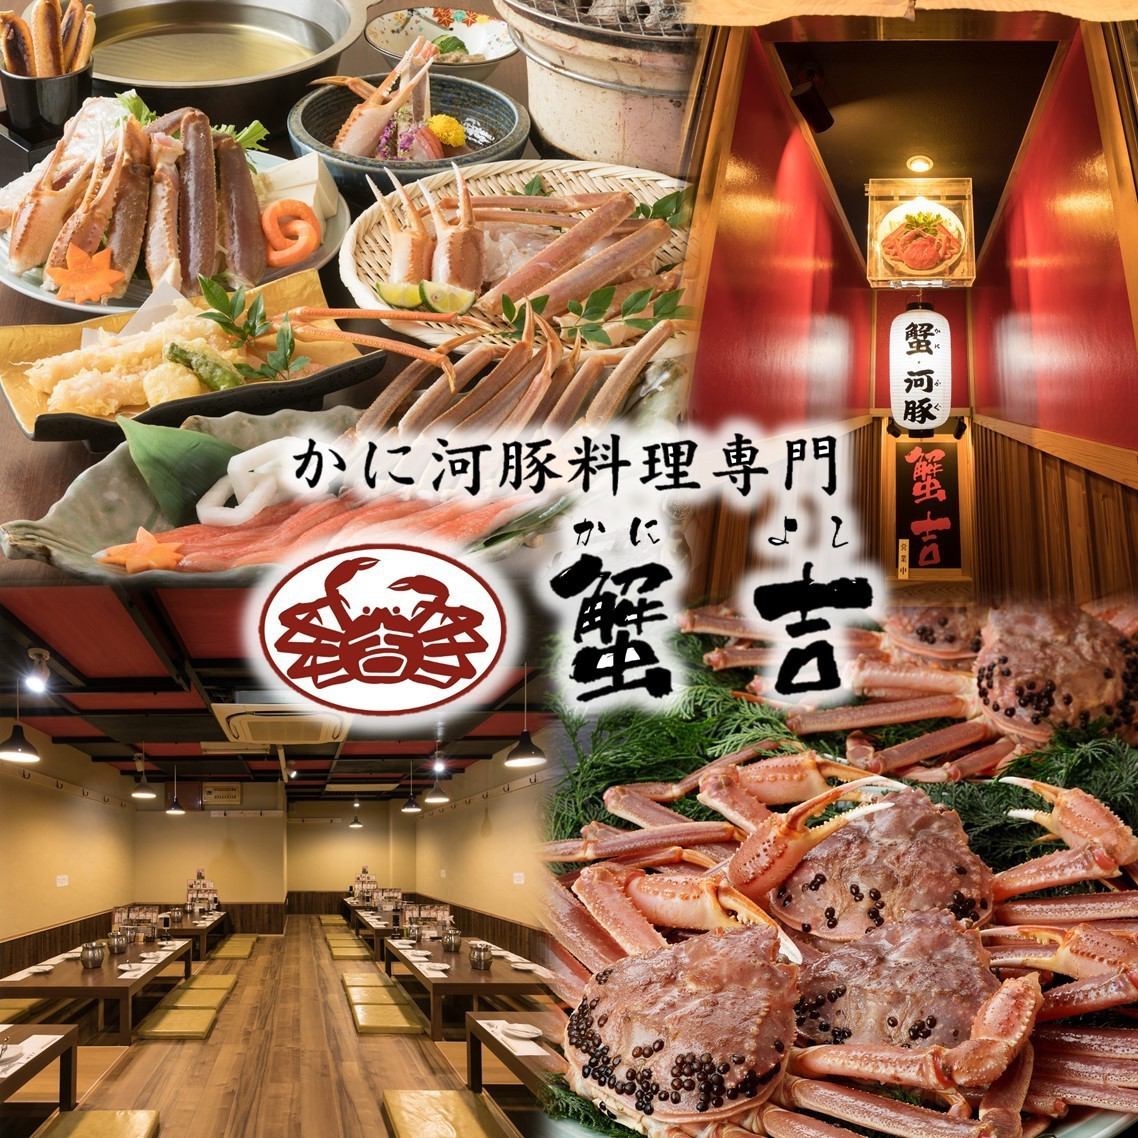 距离难波站步行1分钟的绝佳位置！在私人日式房间的螃蟹和河豚专门店度过奢华的时光...